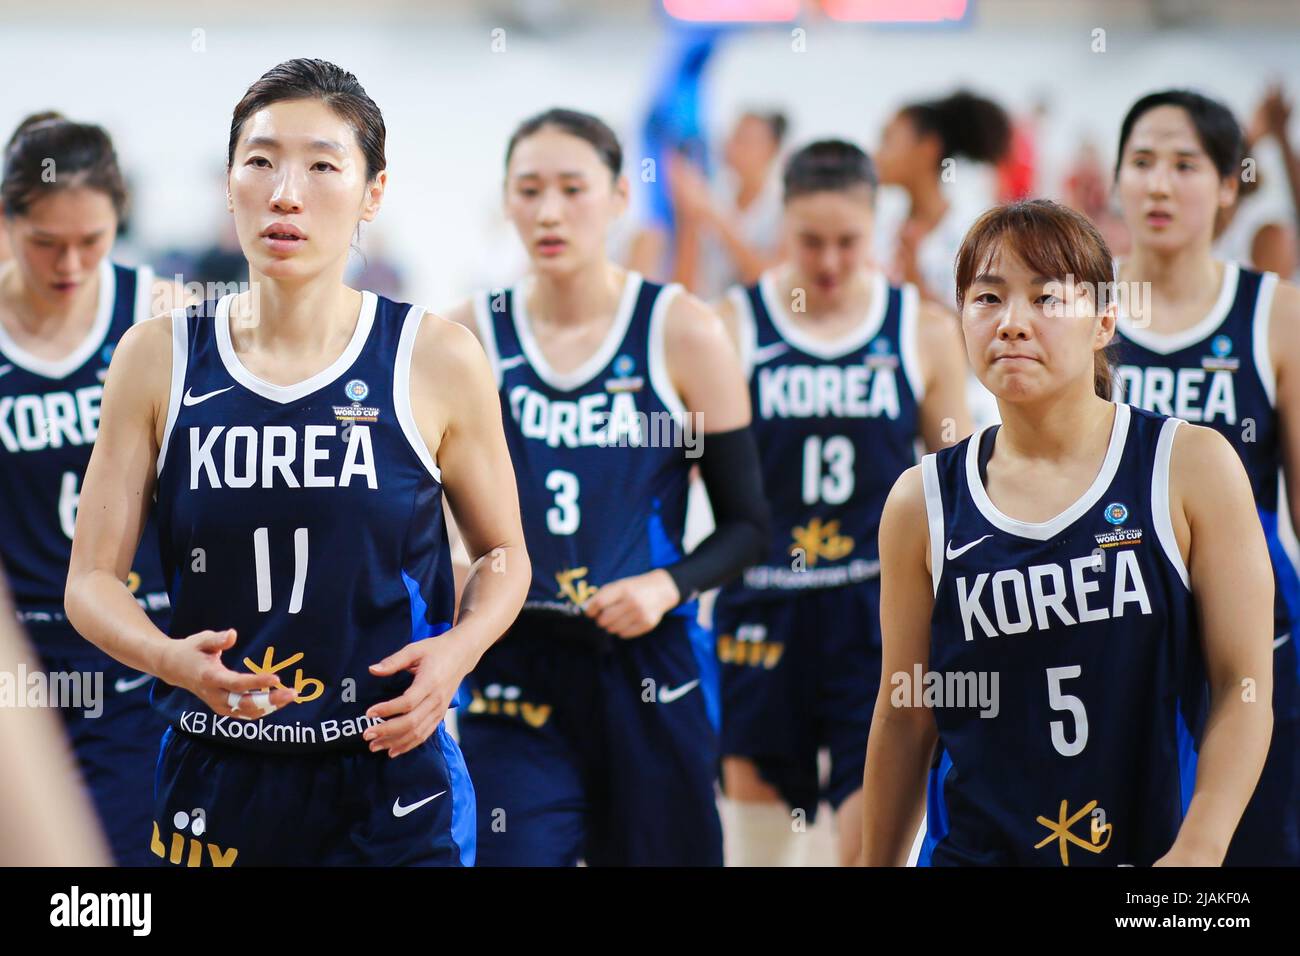 Espagne, Ténérife, 22 septembre 2018 : équipe nationale féminine de basket-ball coréenne lors de la coupe du monde féminine de basket-ball 2018 de la FIBA Banque D'Images